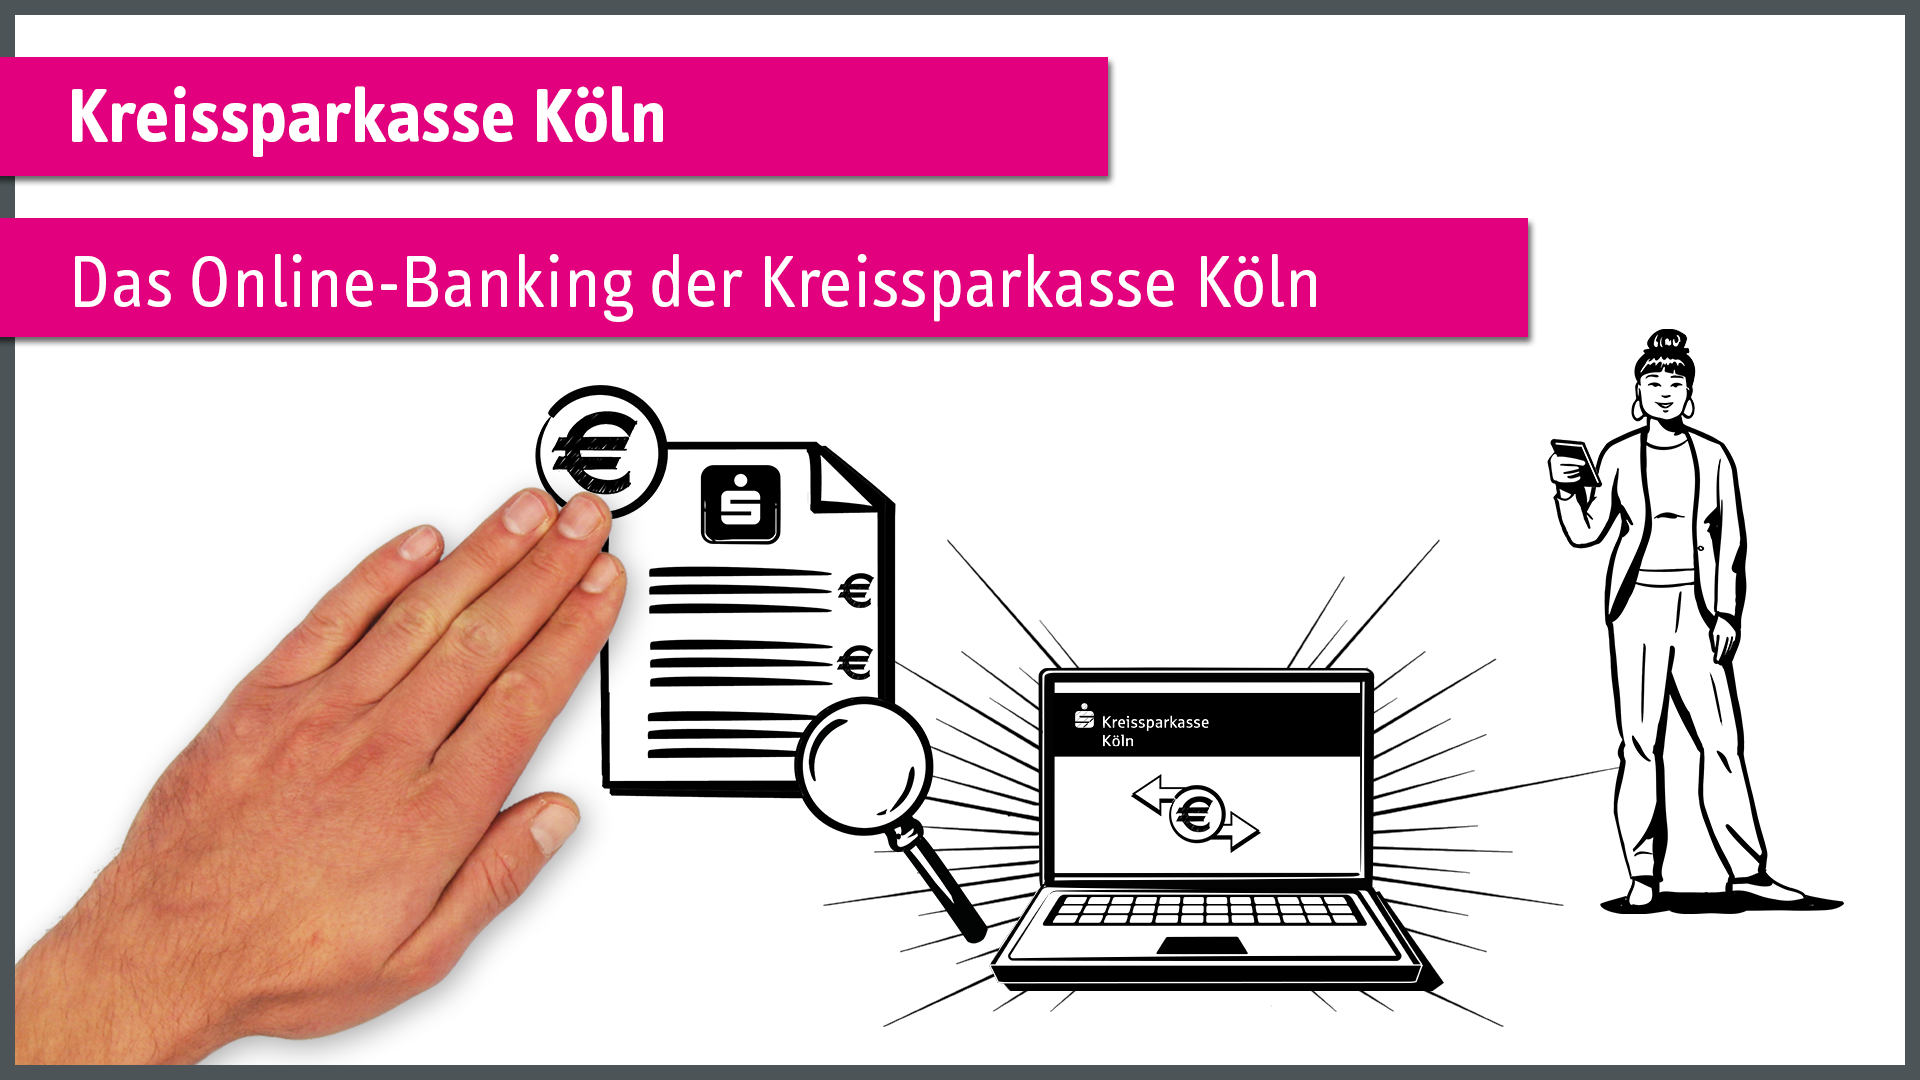 Das neue Online-Banking der Kreissparkasse Köln